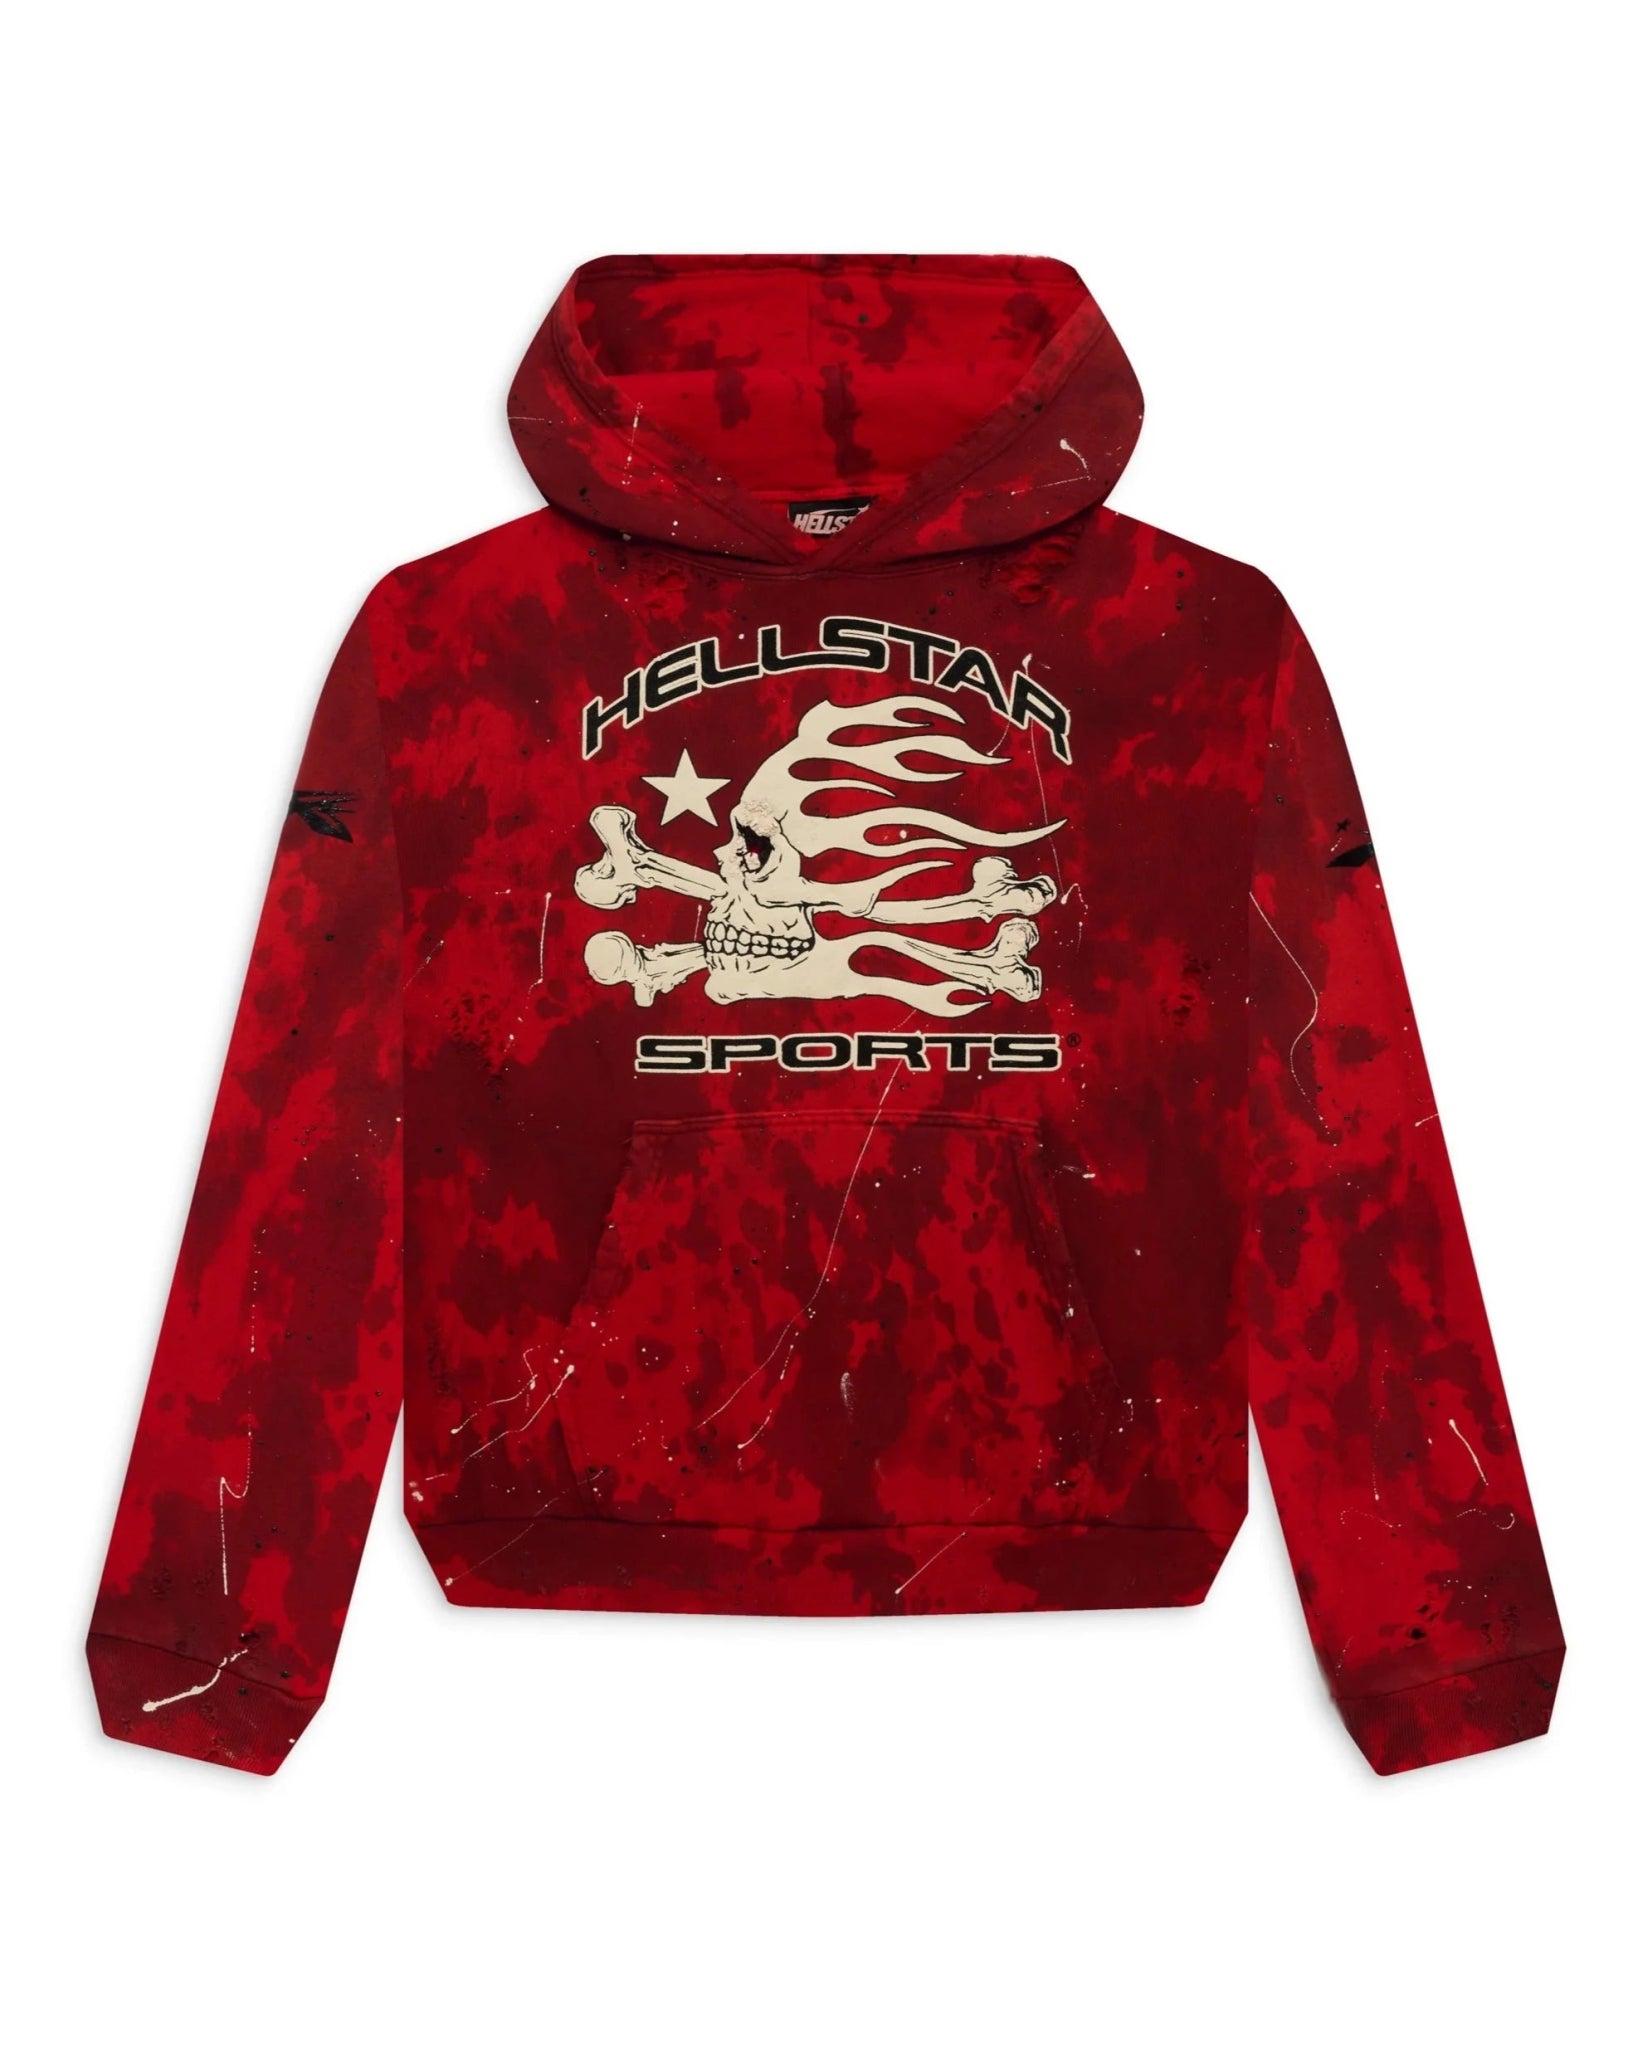 Hellstar Sports Red Tye-Dye Skull Hoodie - Supra Air Sneakers